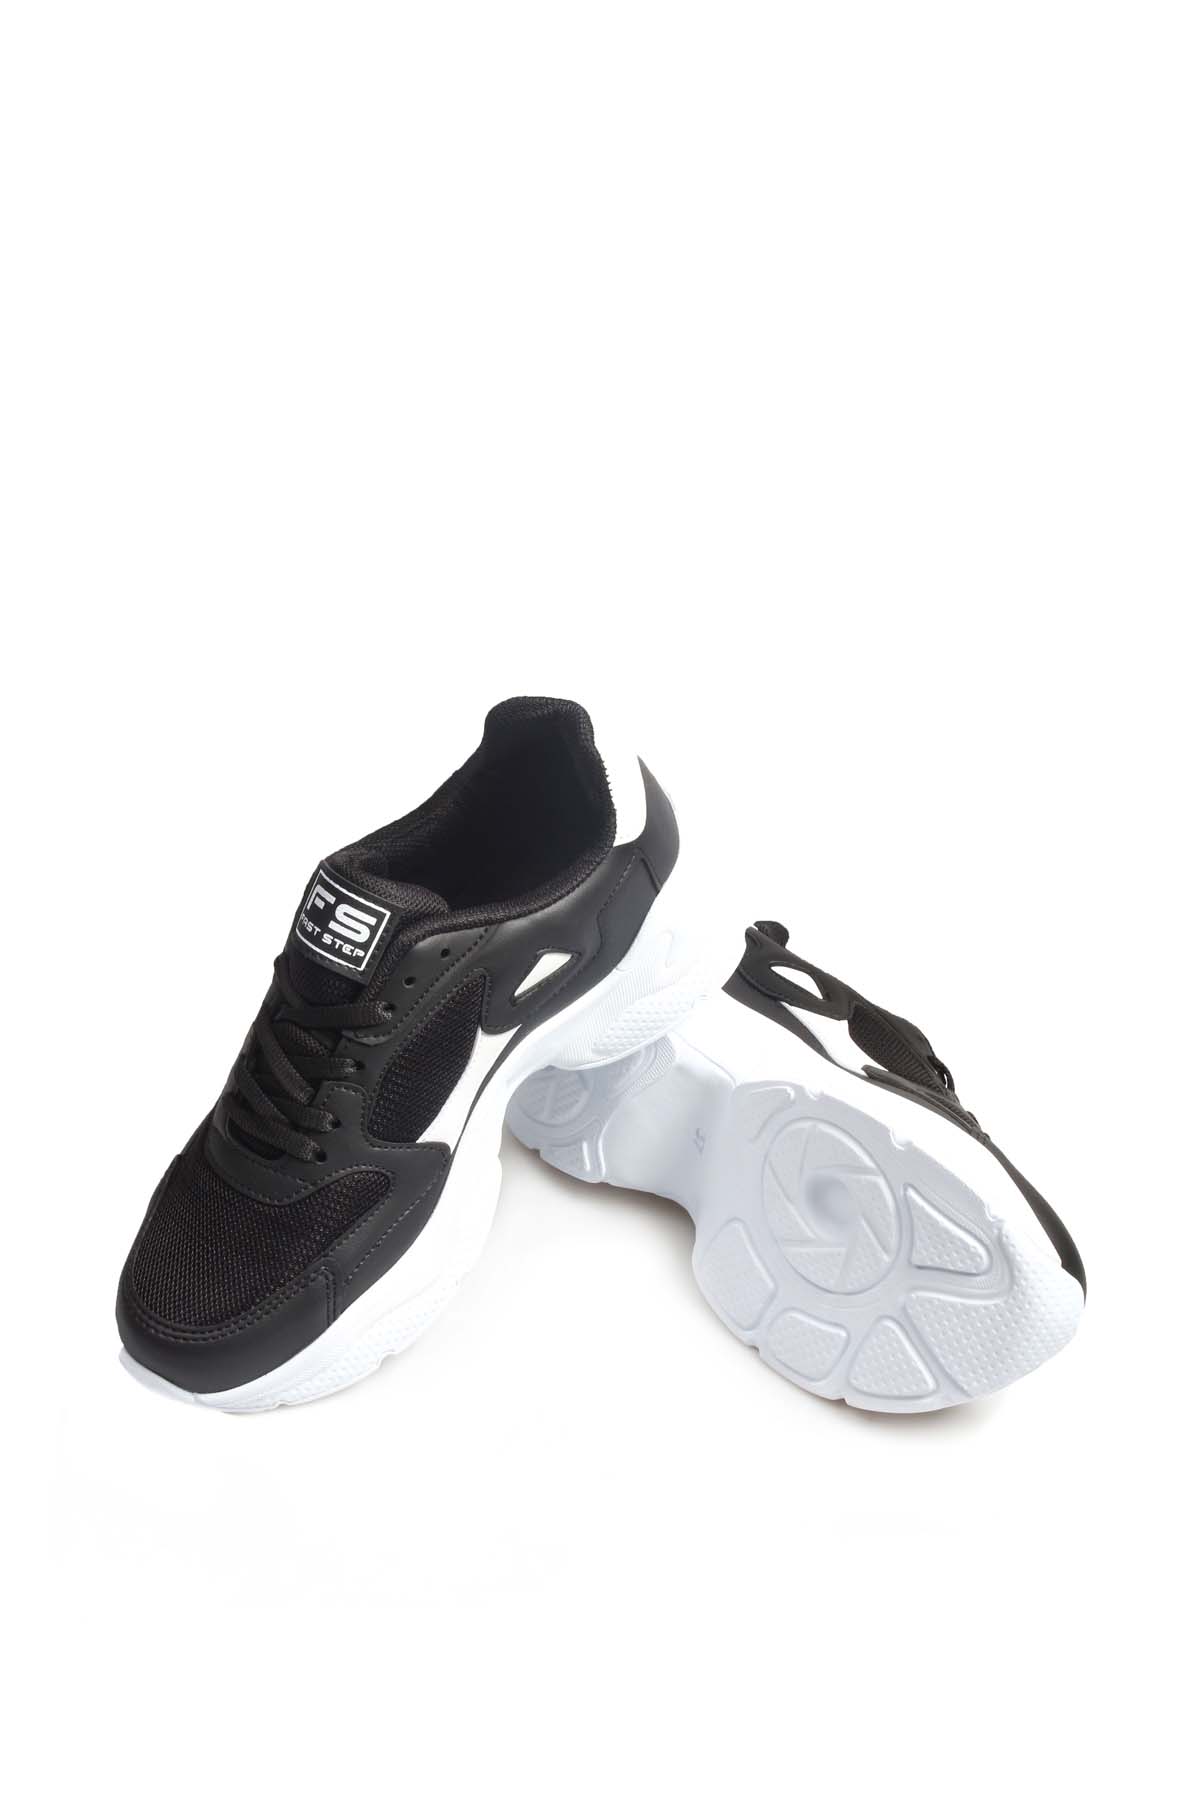 Fast Step Women Sports shoes Black White 666ZA152